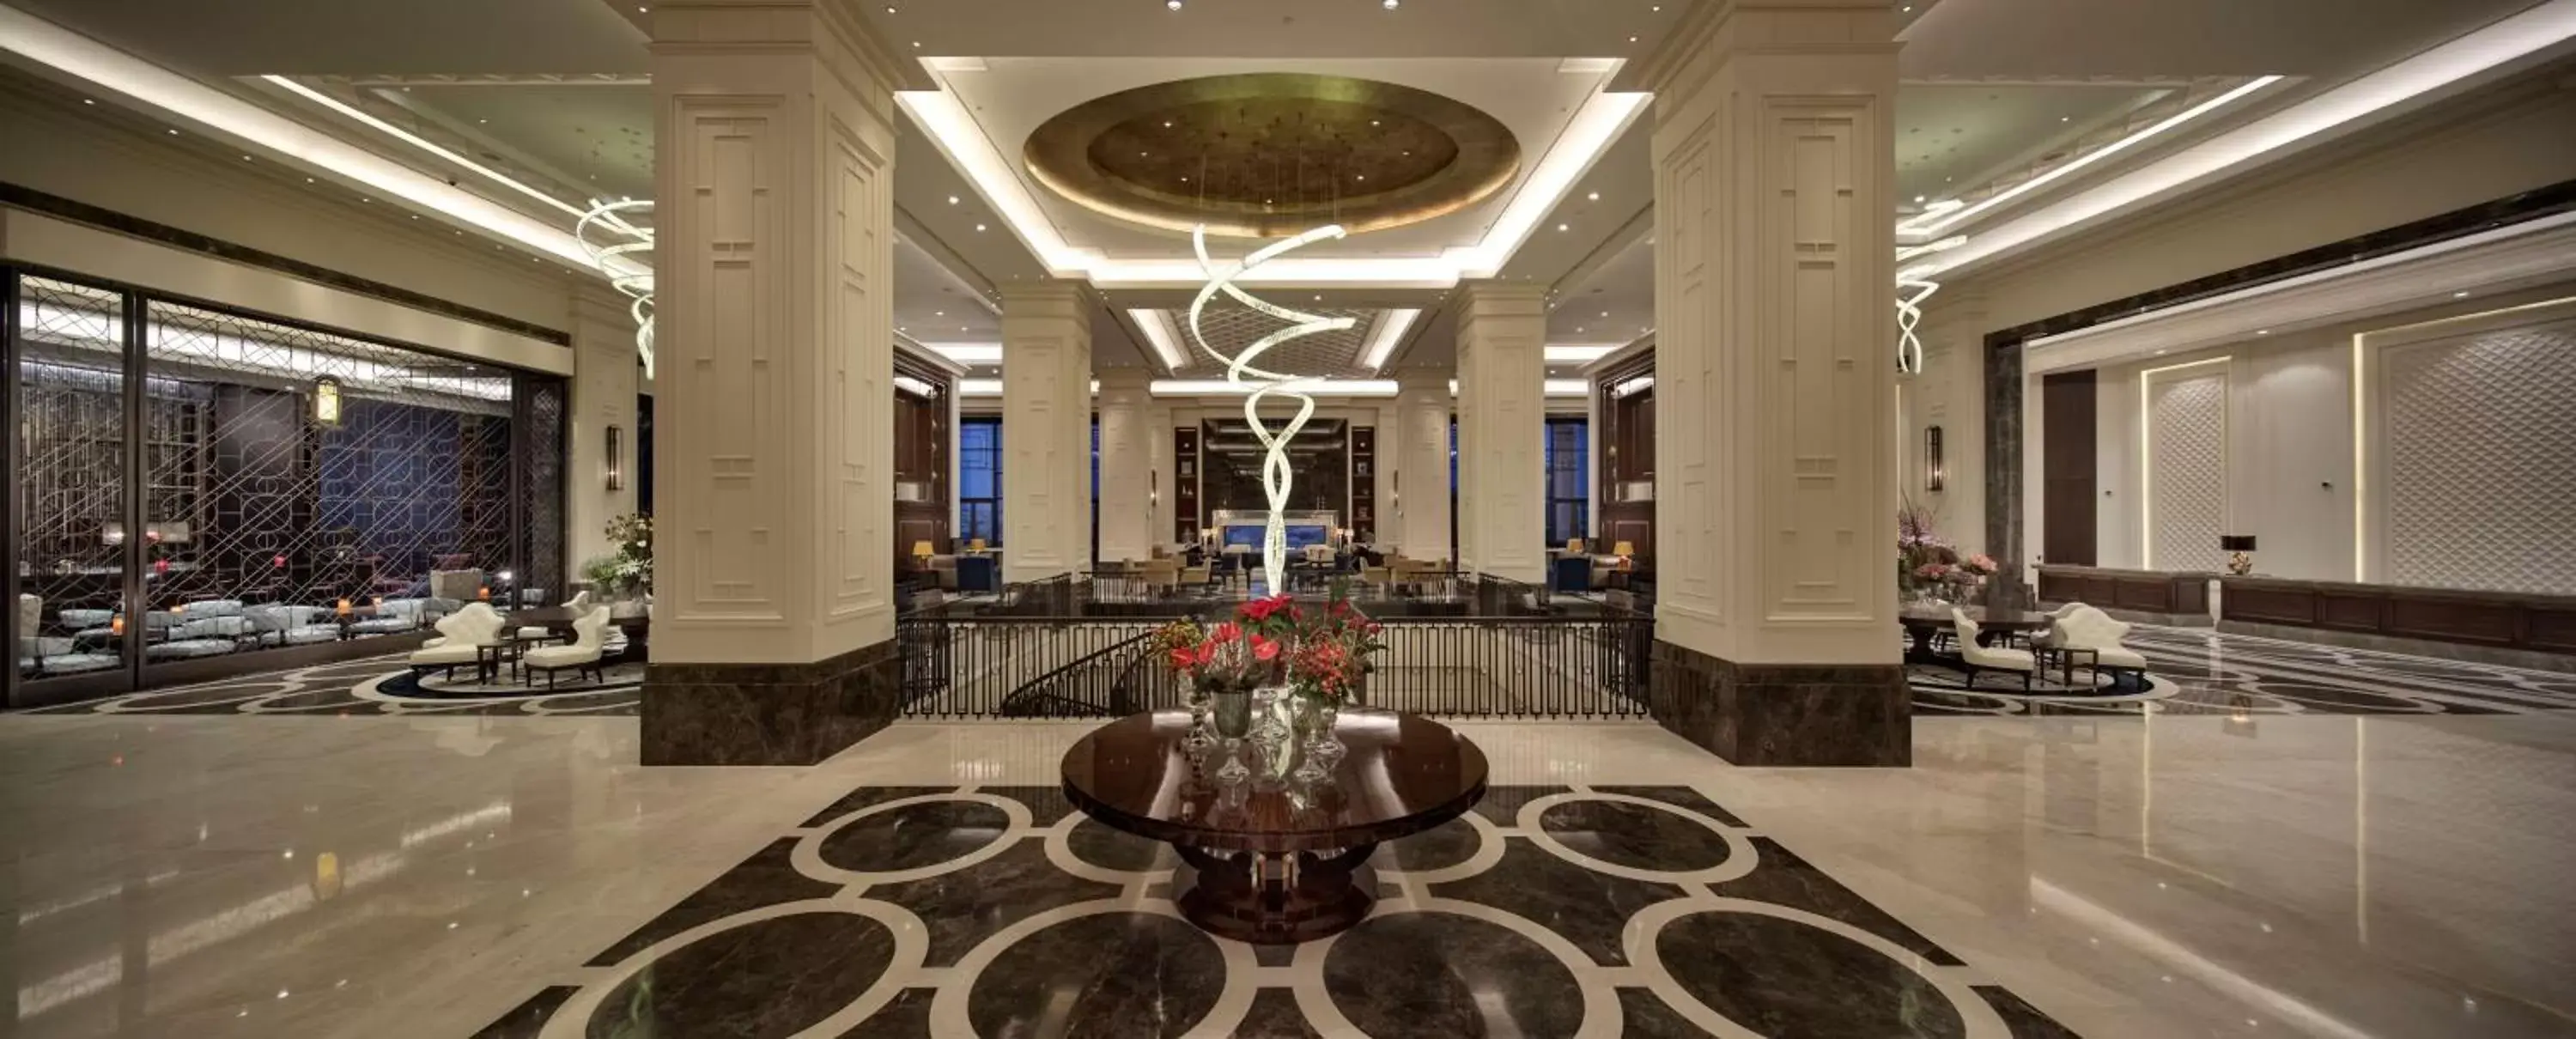 Lobby or reception in Hilton Istanbul Bomonti